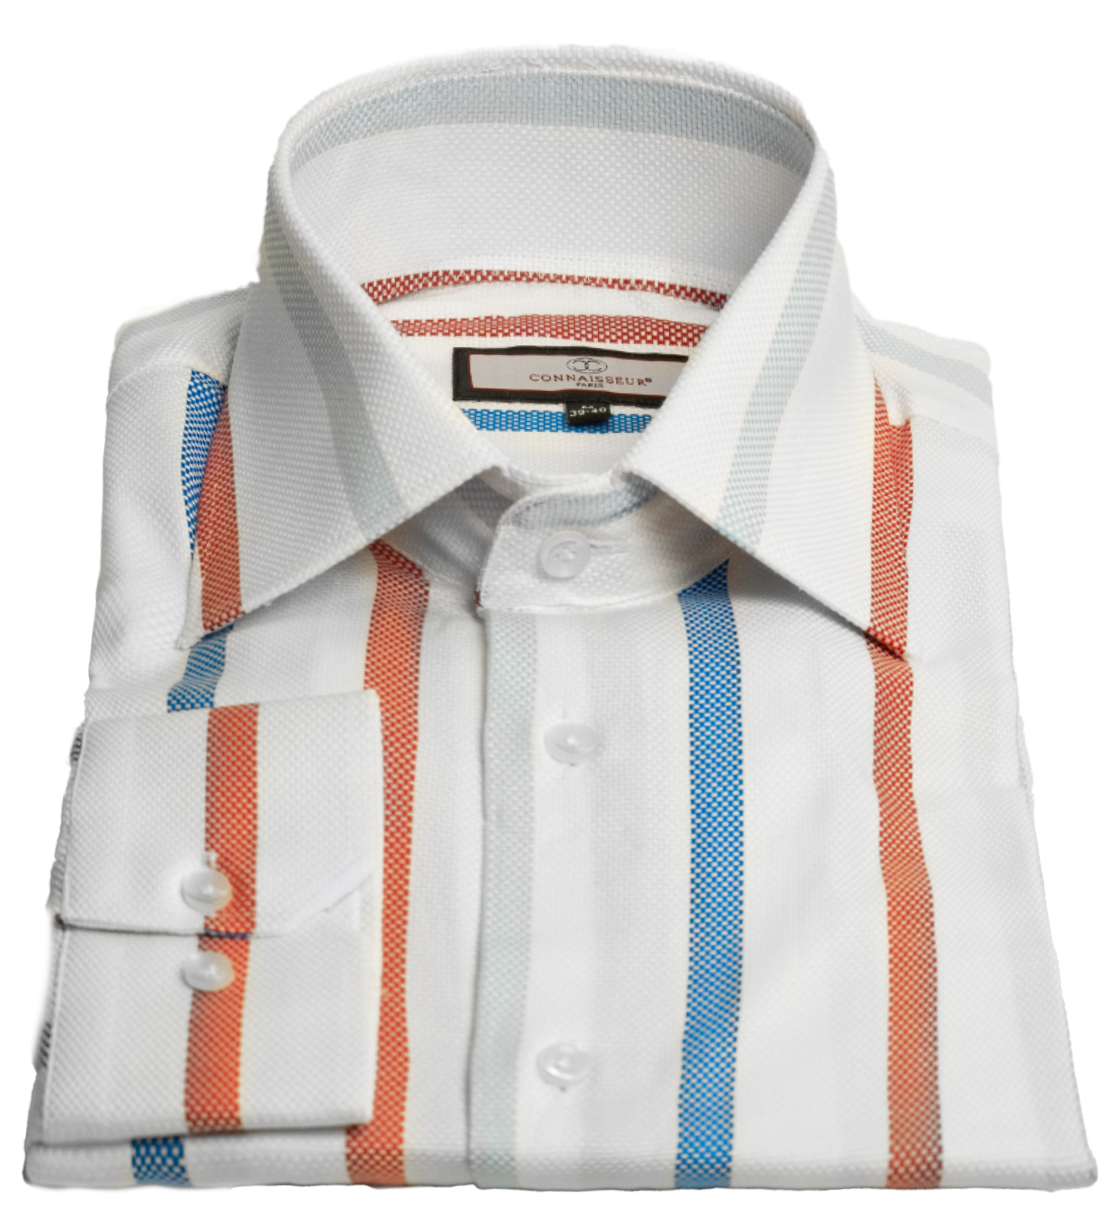 Connaisseur - White with orange and blue plaid slim fit dress shirt